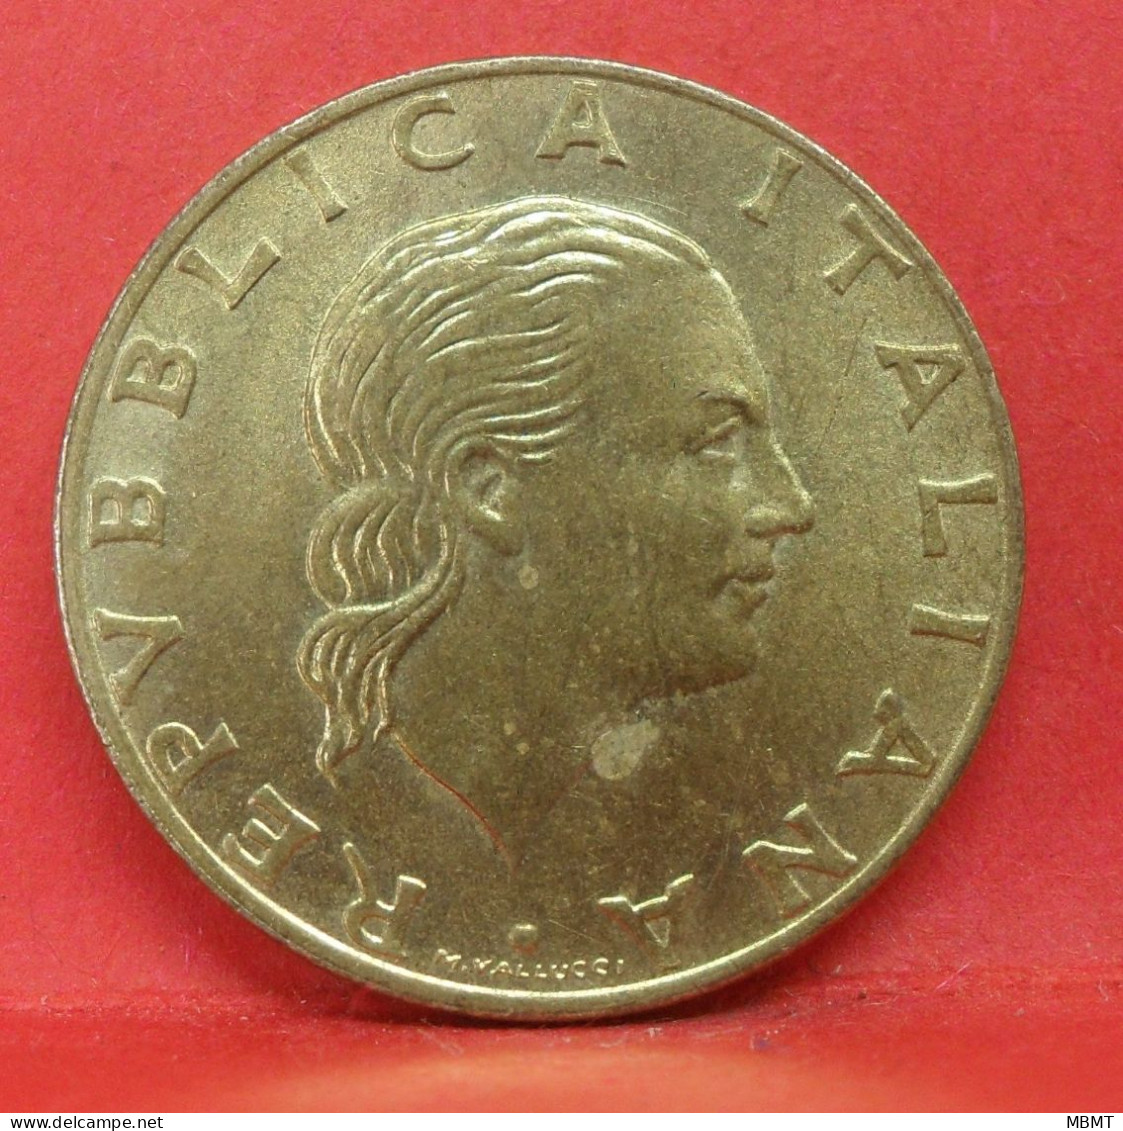 200 Lire 1992 - TTB - Pièce De Monnaie Italie - Article N°3589 - Commemorative